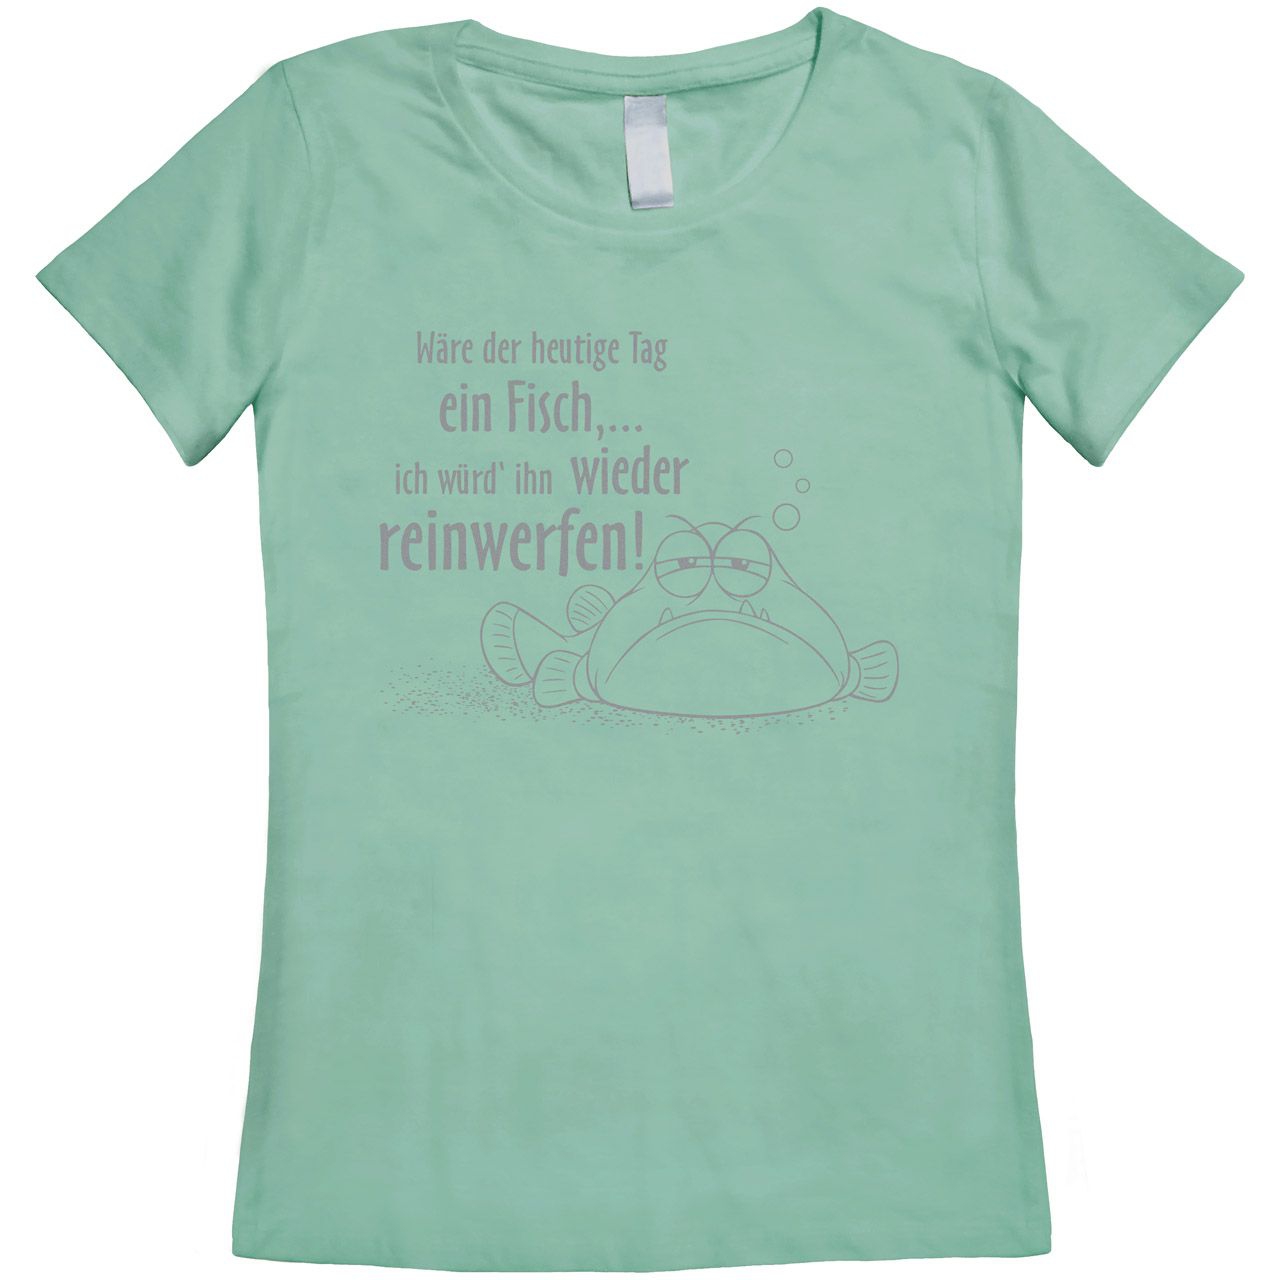 Wäre der heutige Tag ein Fisch Woman T-Shirt mint Medium